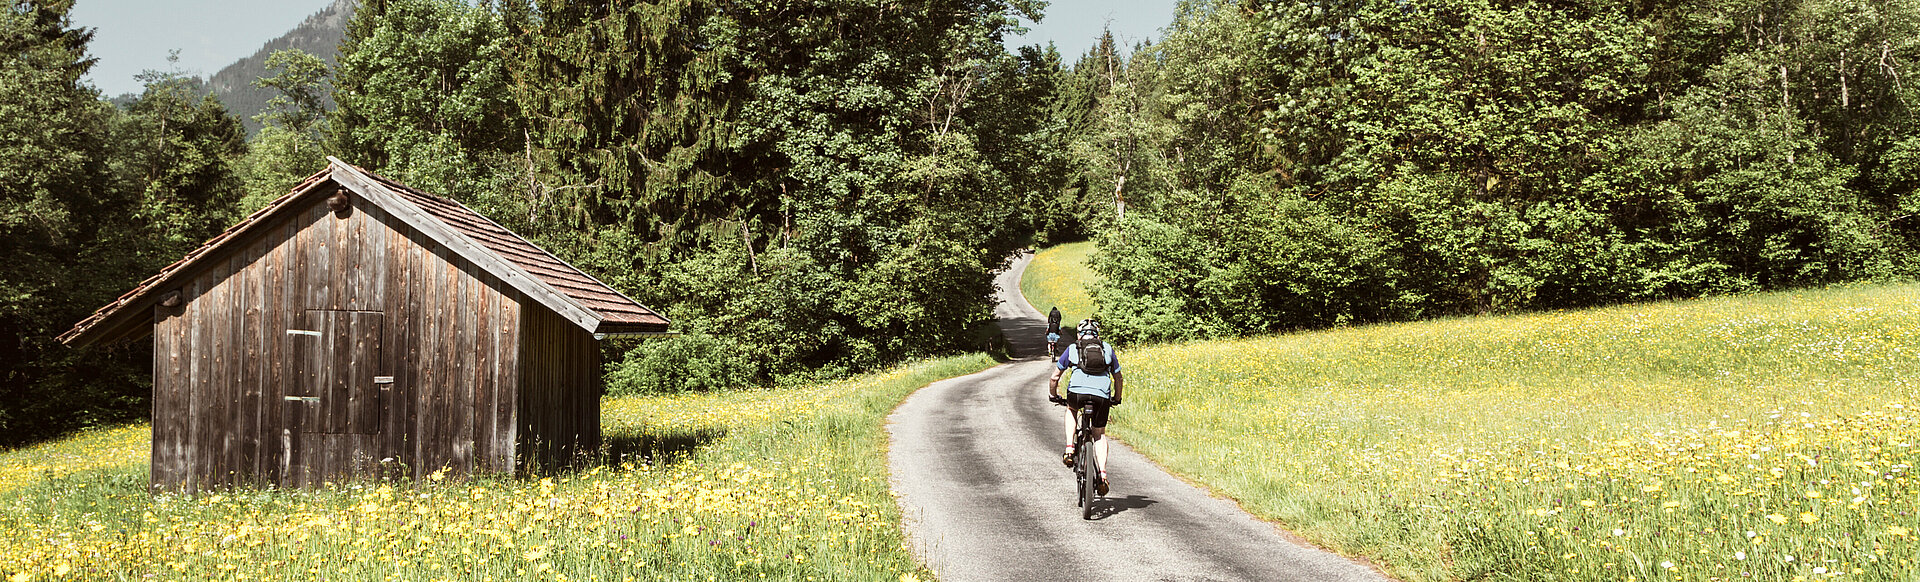 AMERON Neuschwanstein Alpsee Resort & Spa Themen Radfahren Radeln